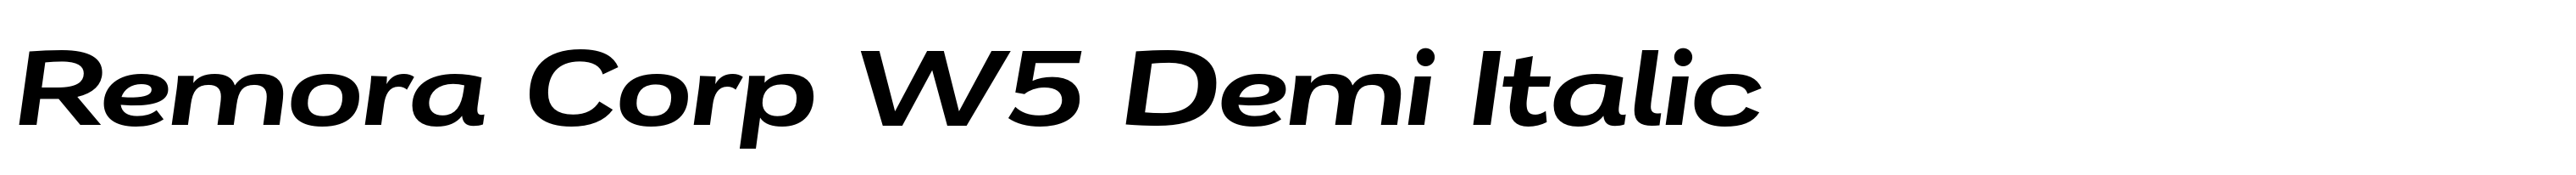 Remora Corp W5 Demi Italic